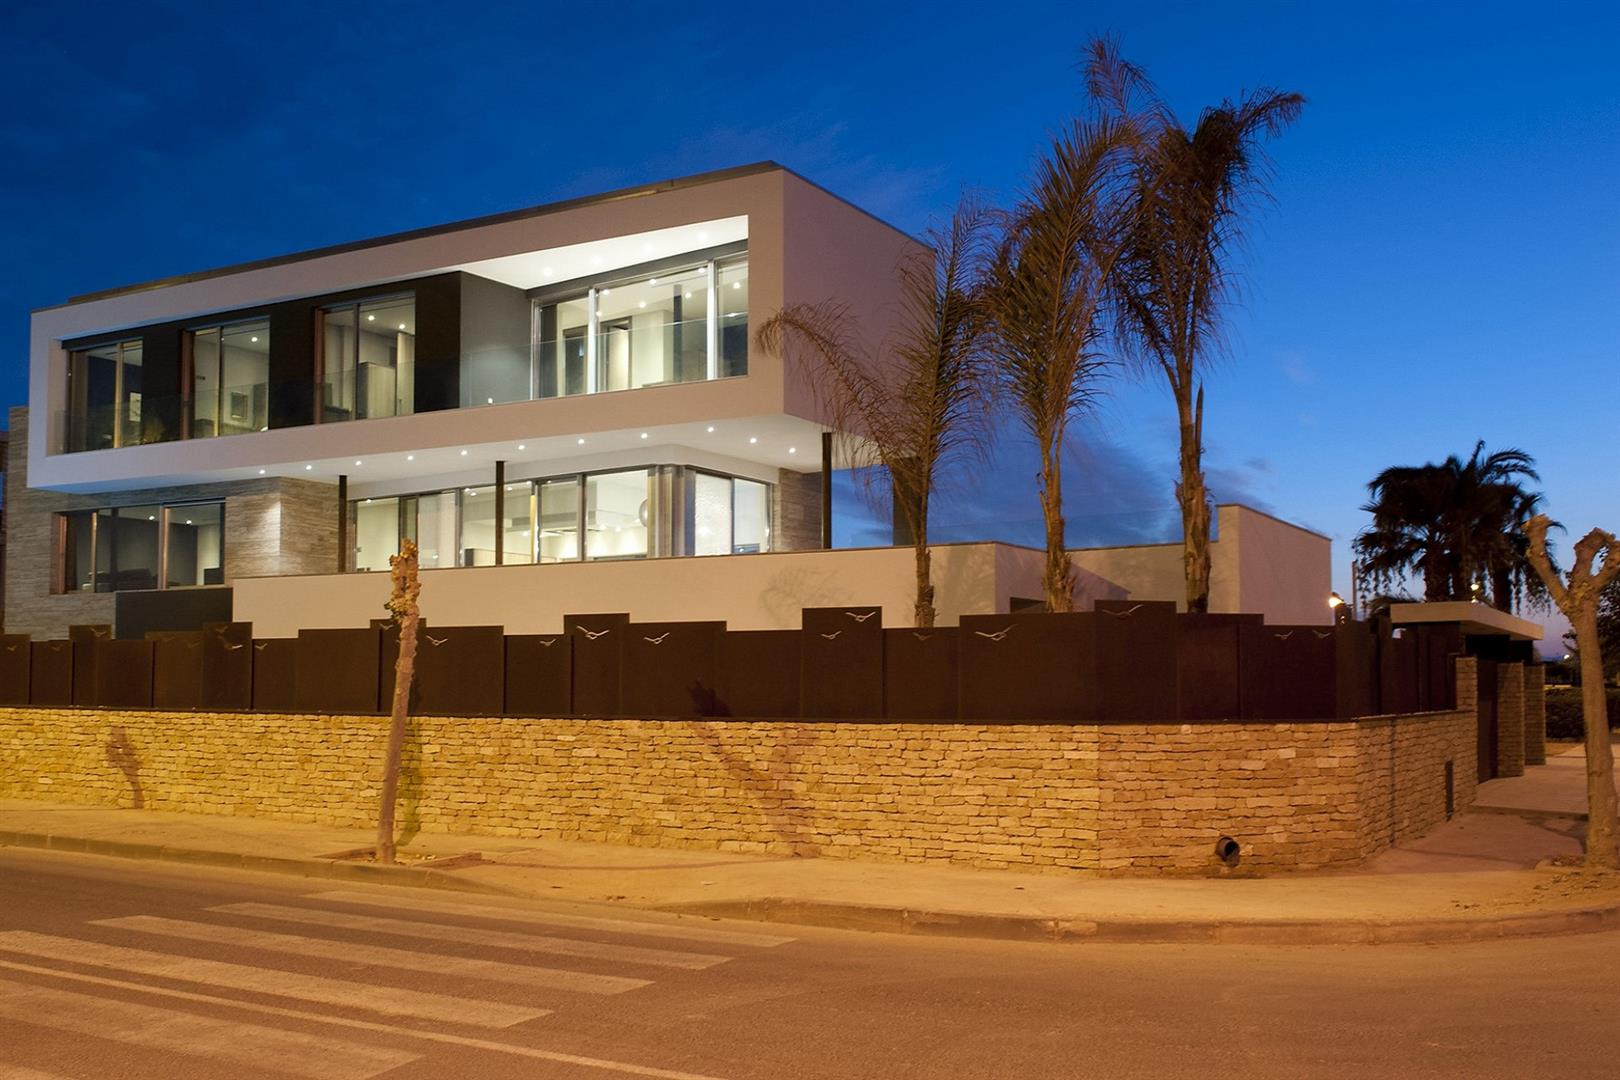 Villa for sale in Alicante 33